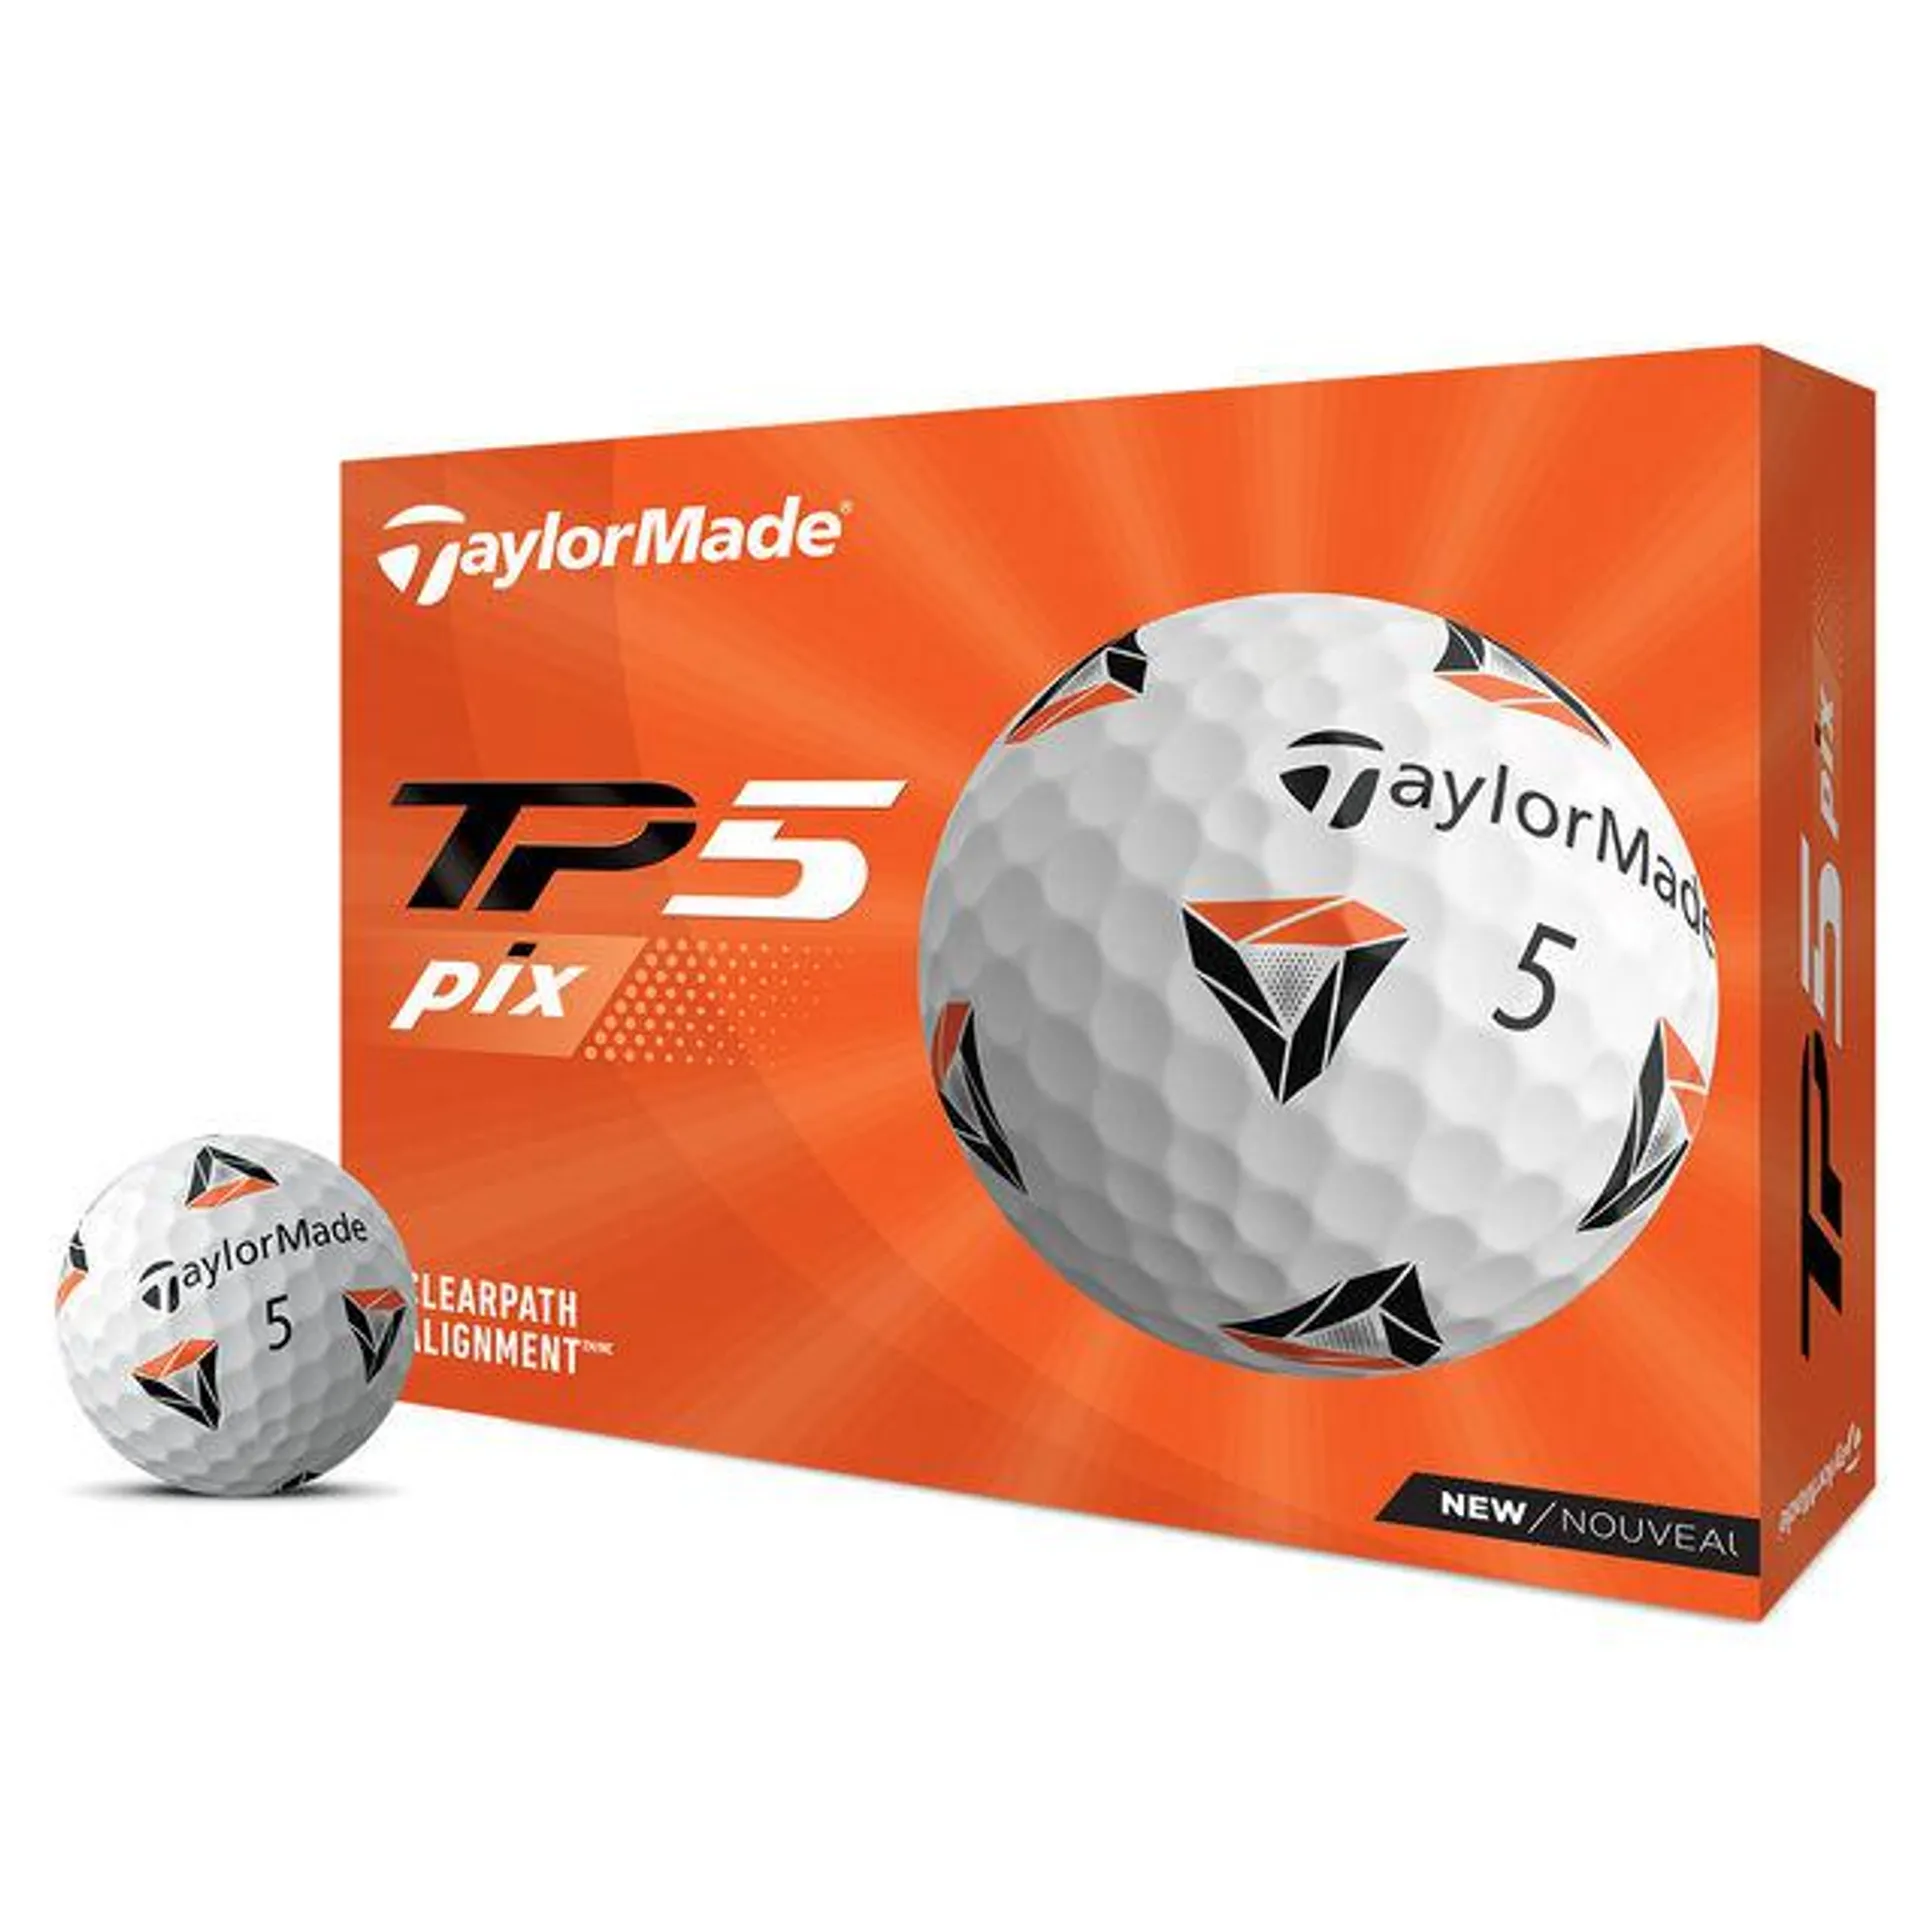 TaylorMade TP5 pix 2.0 12 Golf Ball Pack